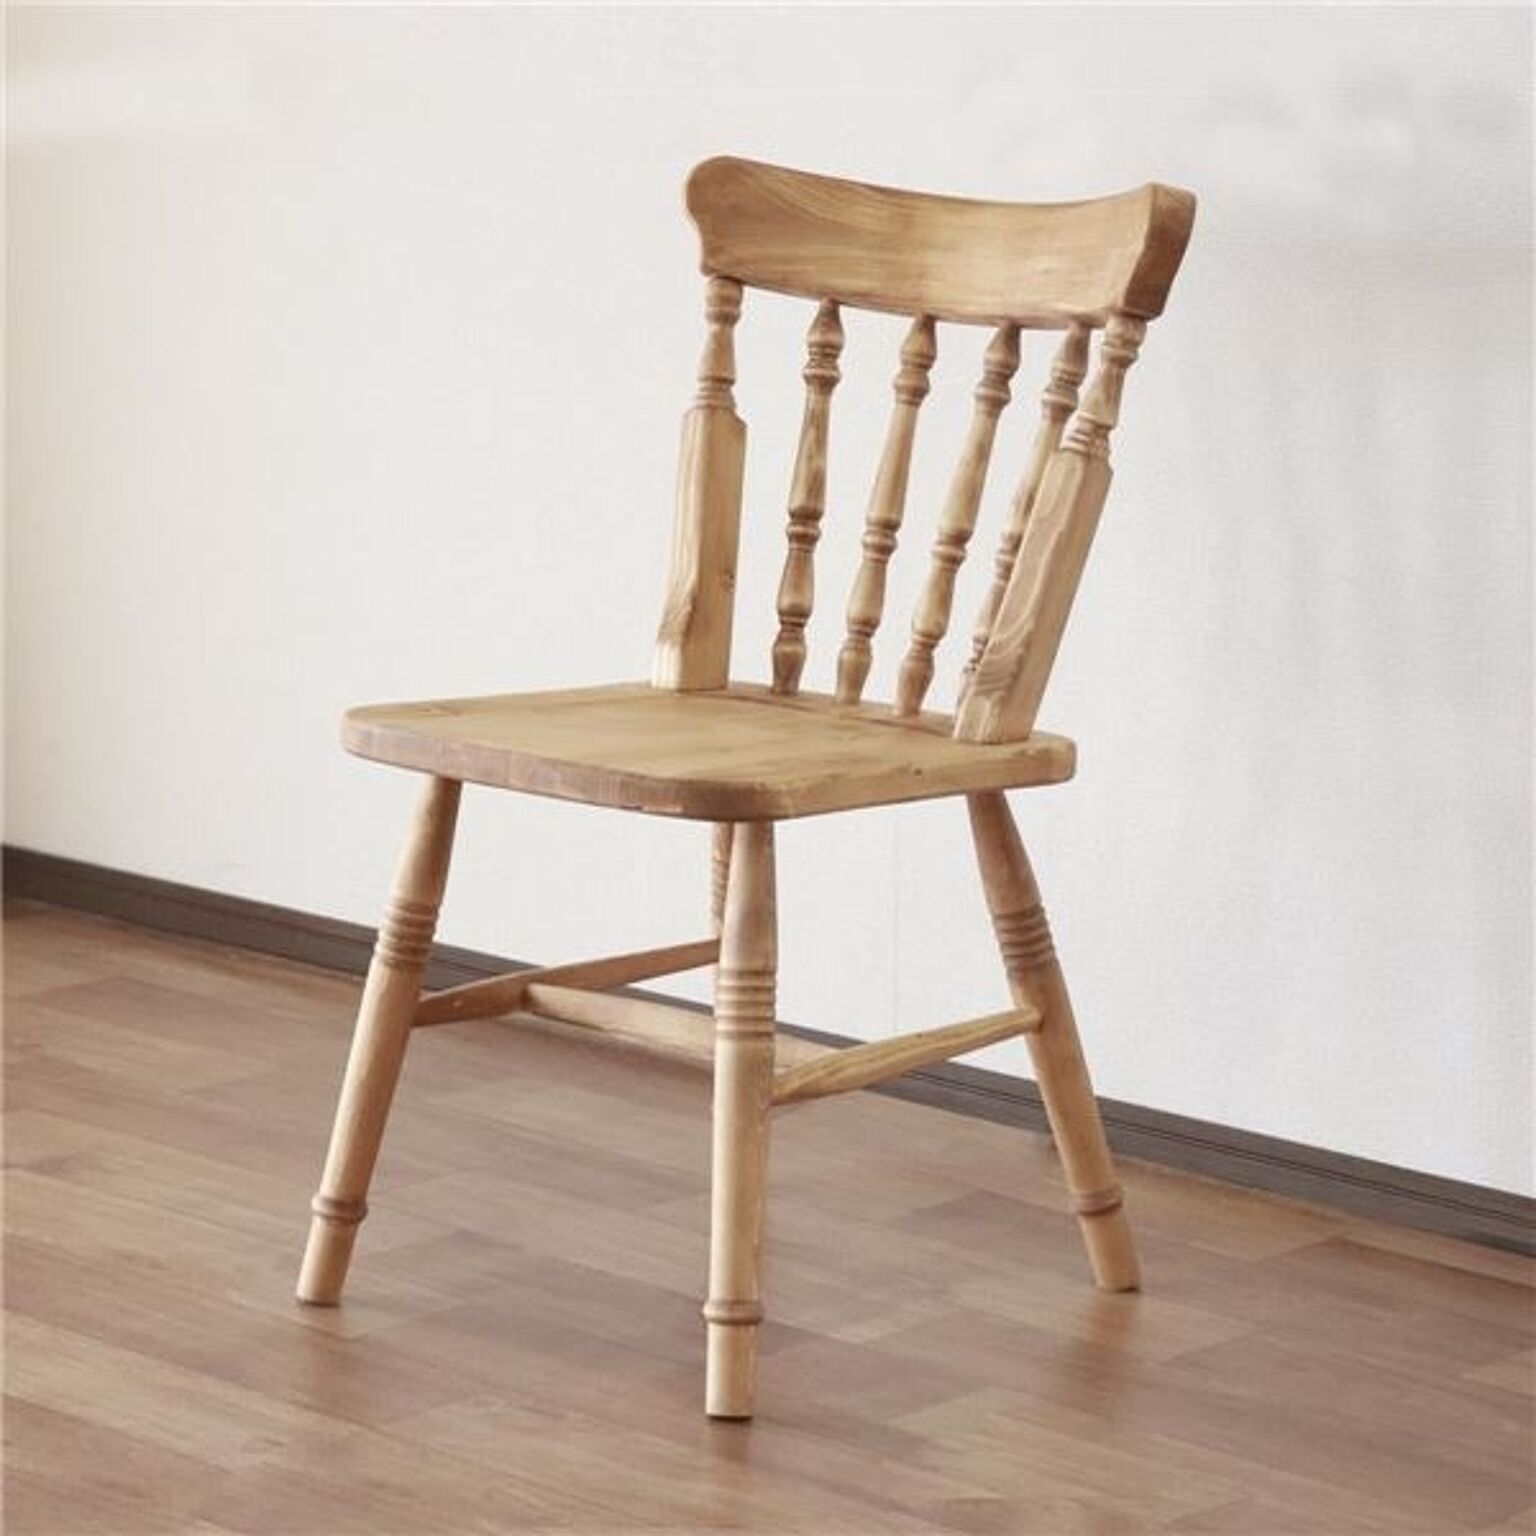 ダイニングチェア 食卓椅子 48.5×52.5×82.5cm ナチュラルブラウン 木製 パイン材 オイル塗装 完成品 リビング ダイニング